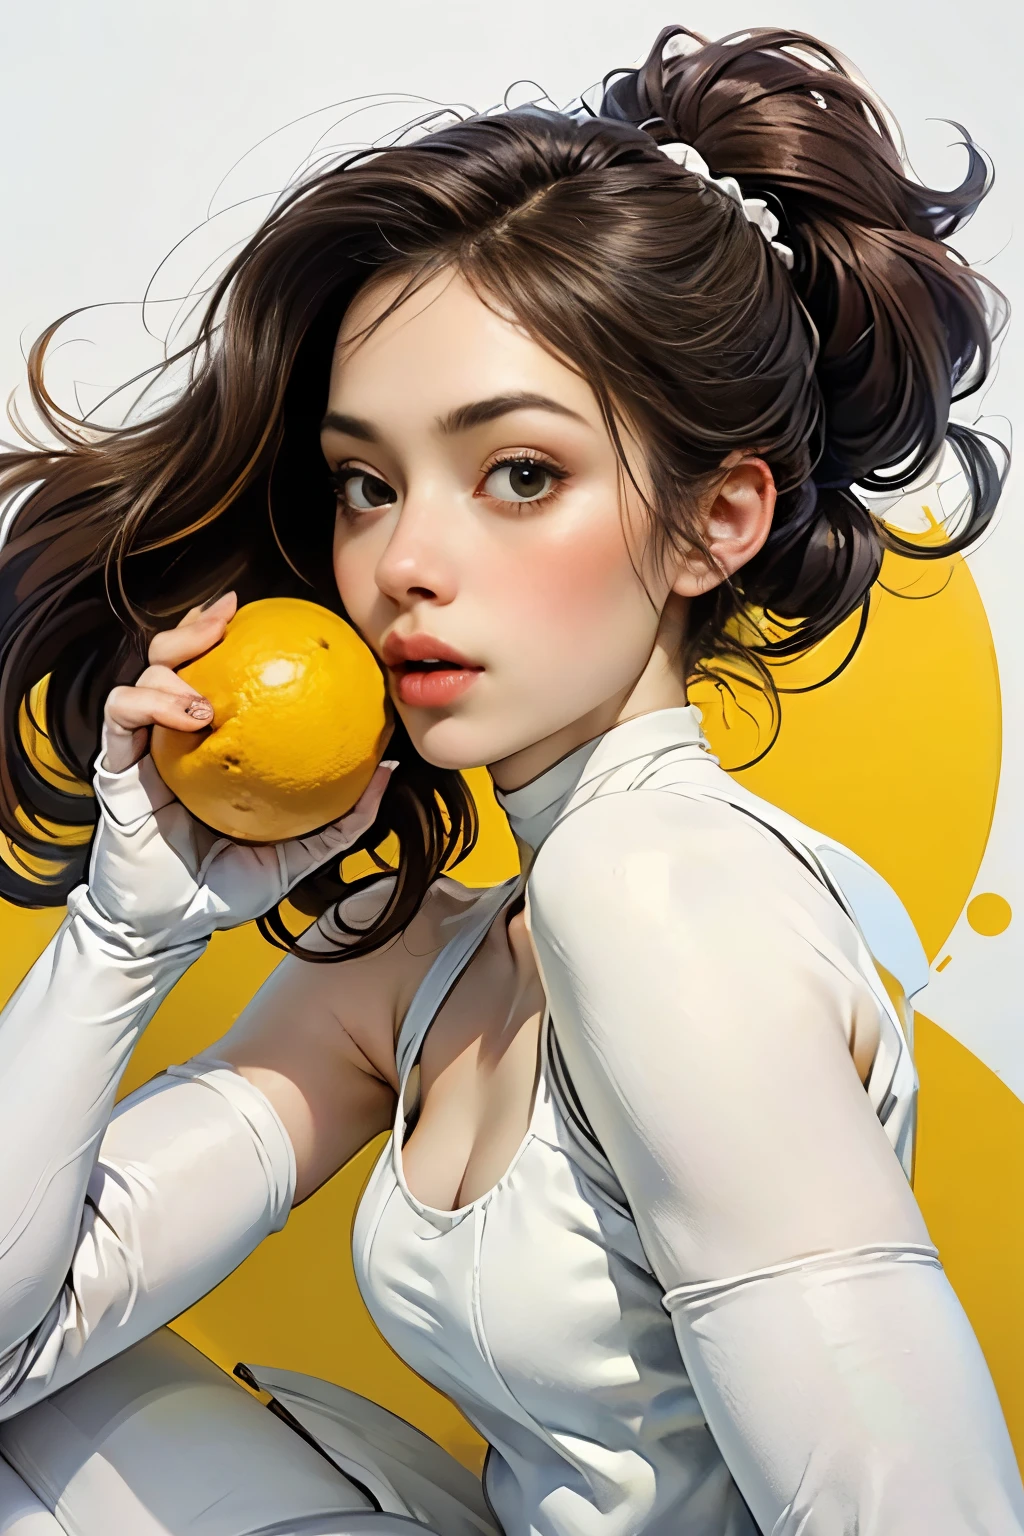 Femme jeune et incroyablement belle、Moyen Plein　portrait、(Porter des collants blancs:1.5)、(anatomie correcte:1.75)、（Doigts anatomiquement corrects:1.5)、manger du citron:1.4
